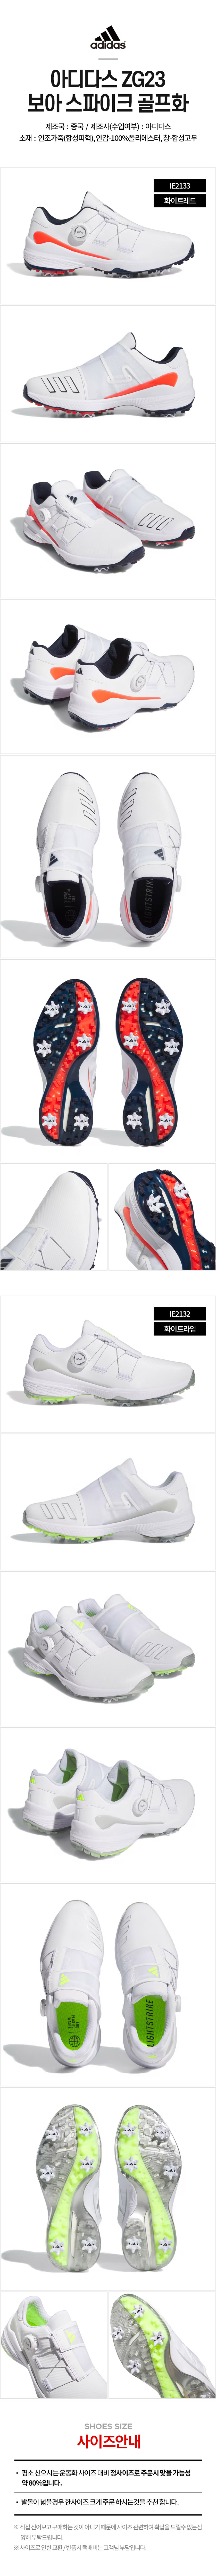 adidas_zg23_boa_golf_shoes_23.jpg